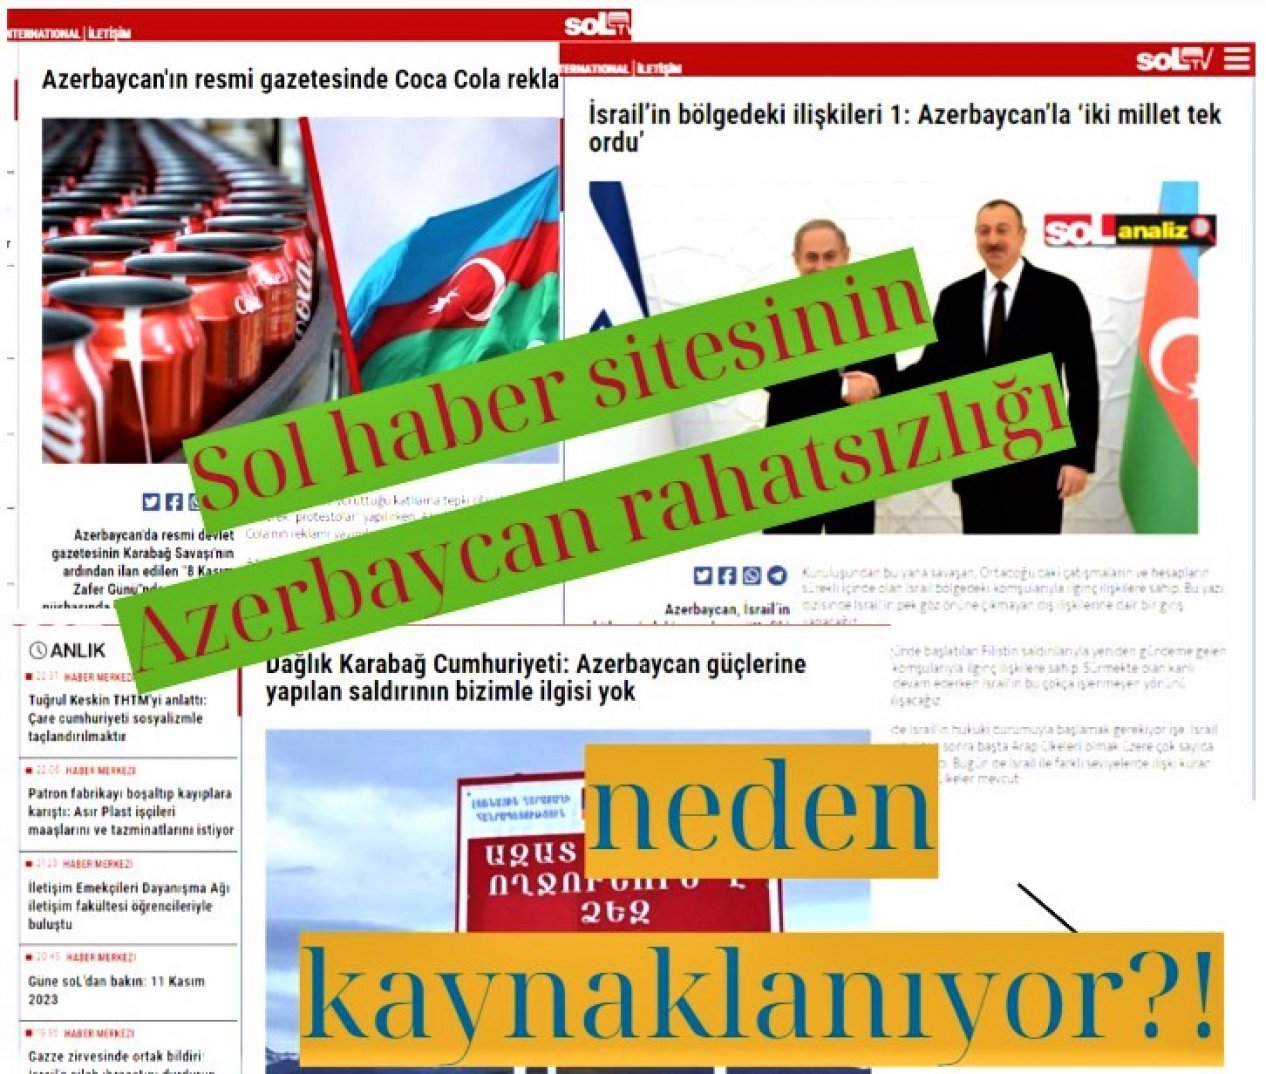 “Azerbaycan'ın resmi gazetesinde Coca Cola reklamı”na yer verilmesini haber yapan Sol haber sitesinin Azerbaycan rahatsızlığı neden kaynaklanıyor?!